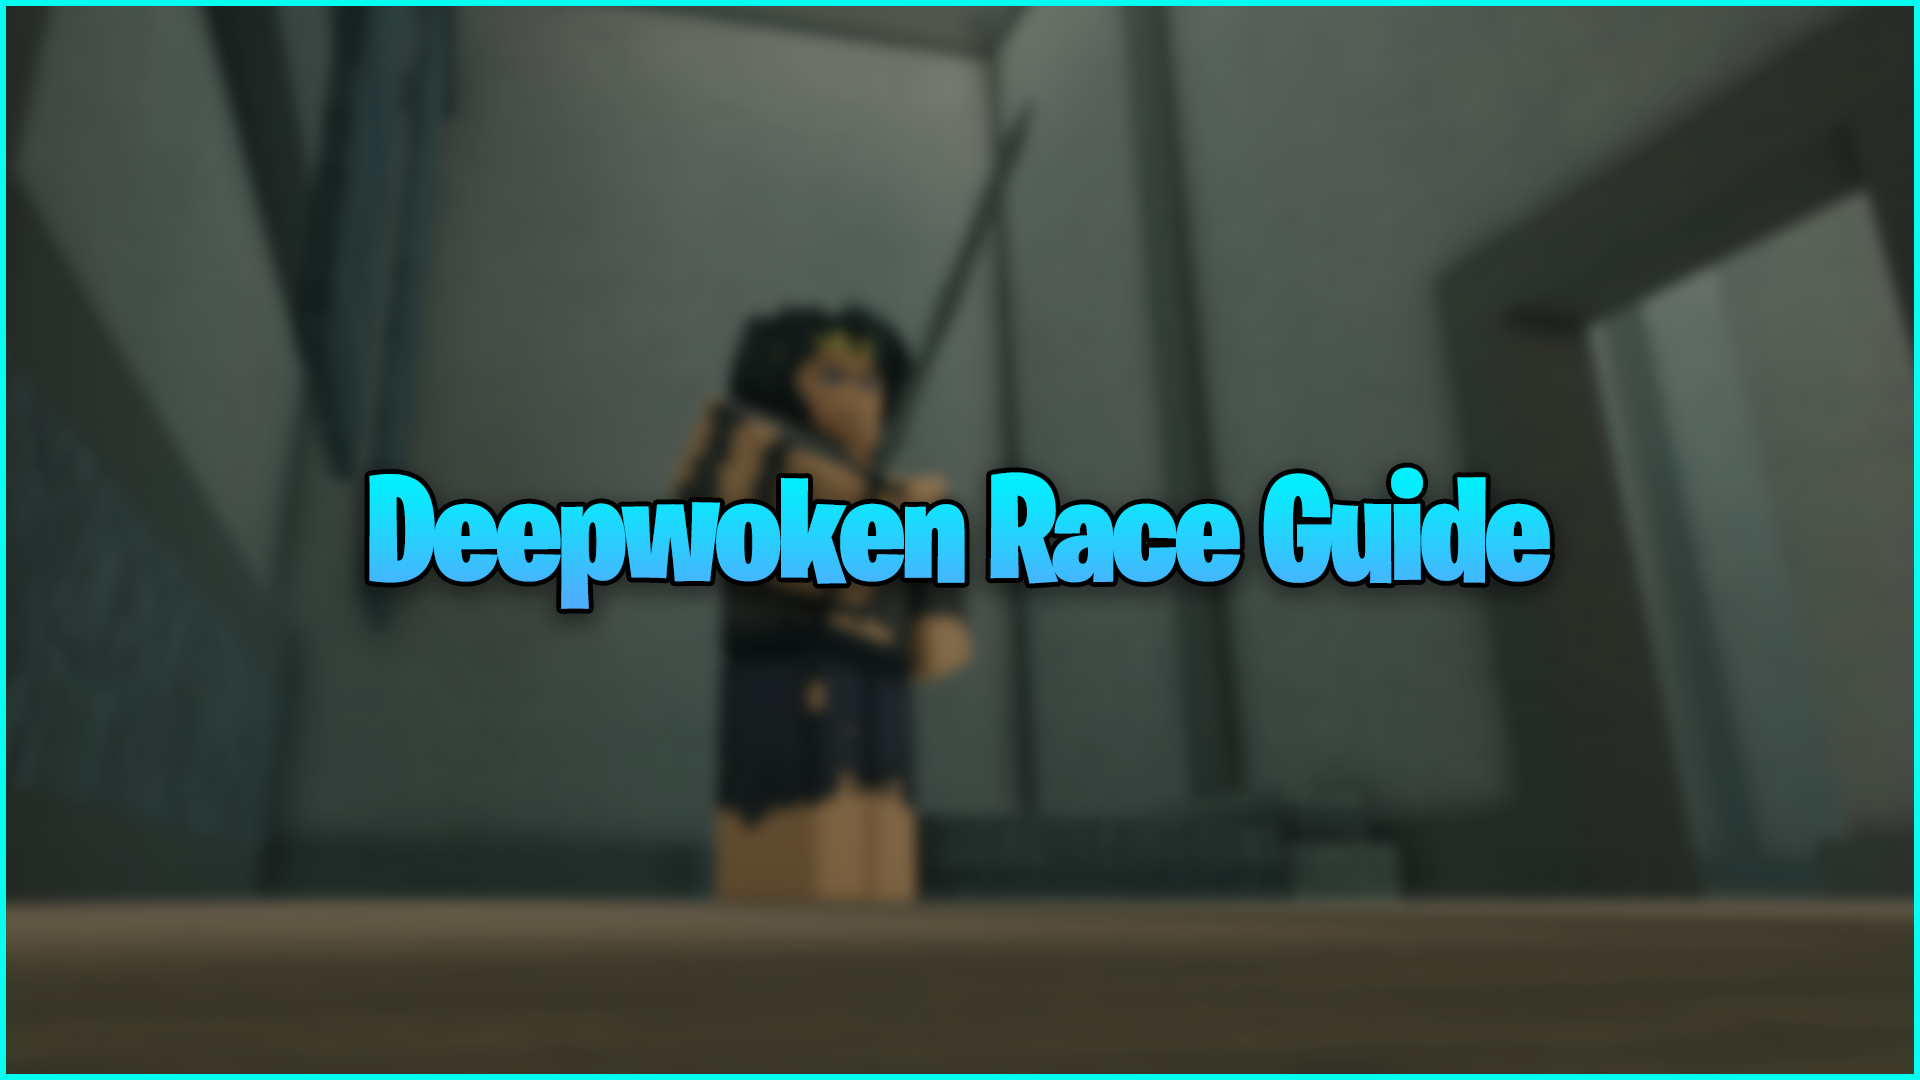 Deepwoken Races and Stats Guide [December 2023]